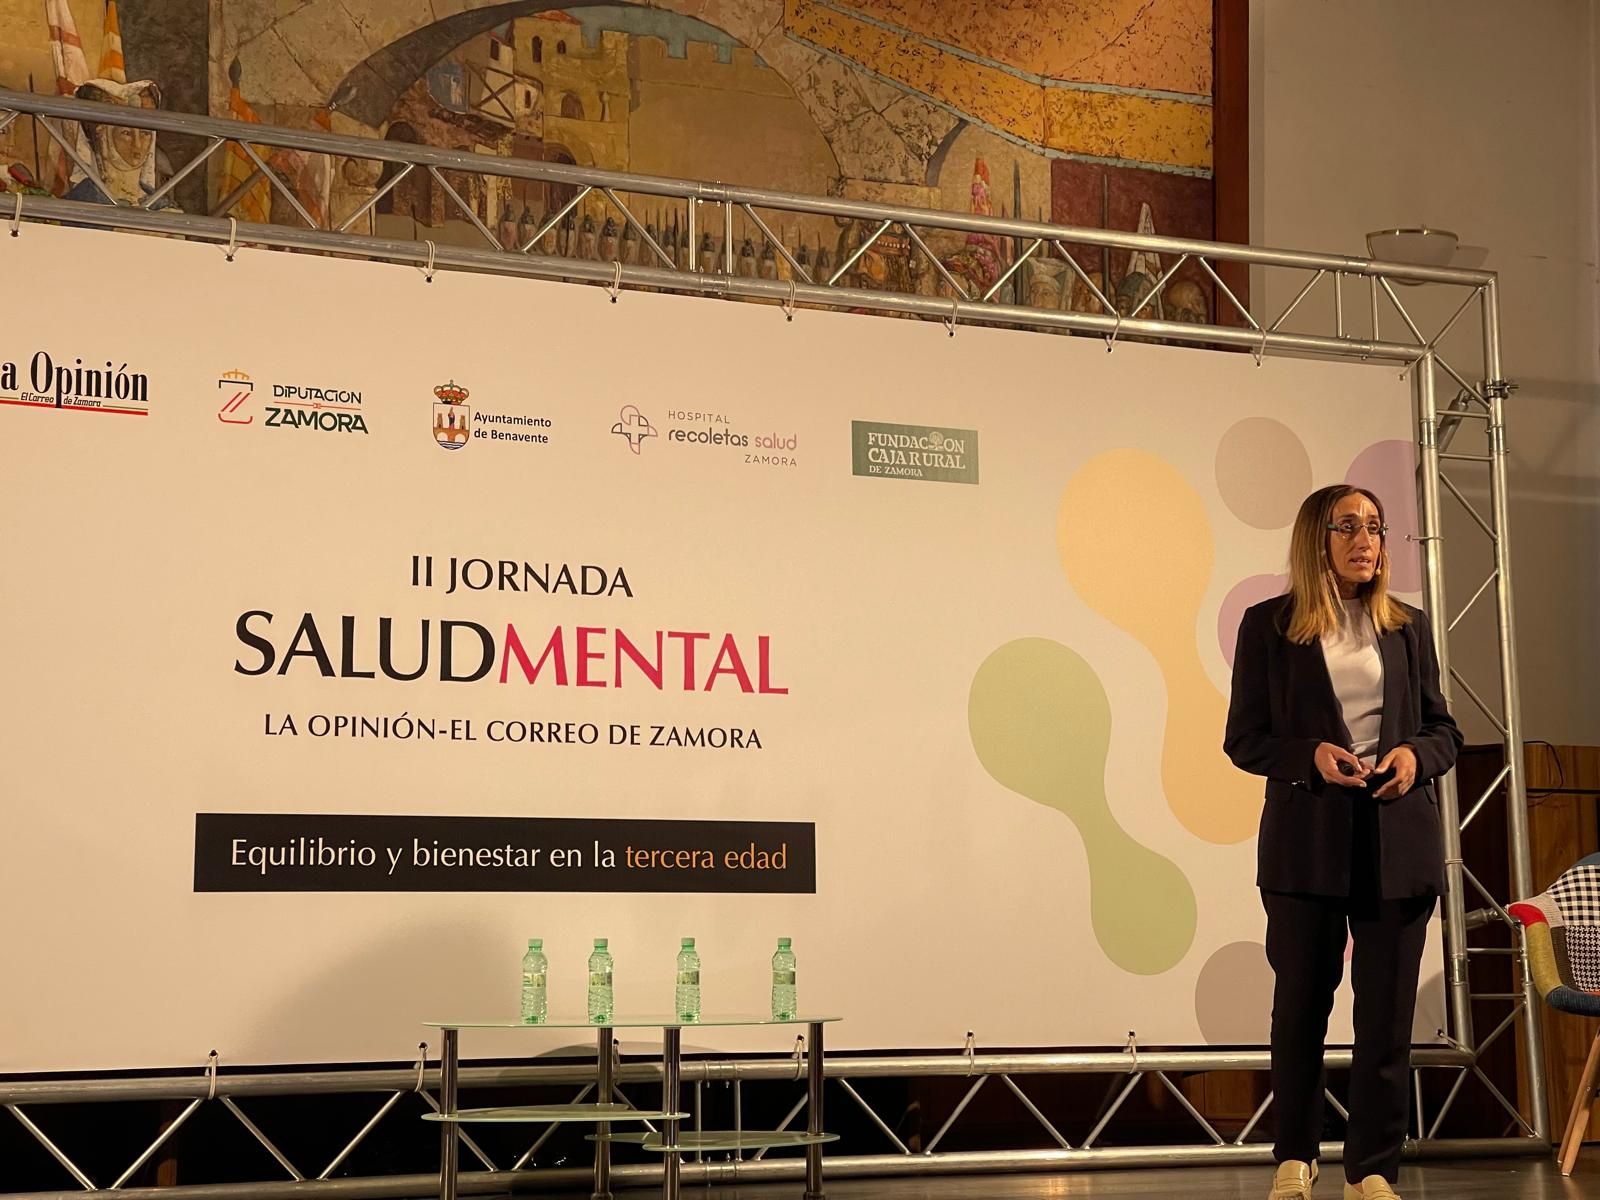 GALERÍA | Así ha sido la Jornada de Salud Mental en Benavente organizada por el periódico LA OPINIÓN-EL CORREO DE ZAMORA